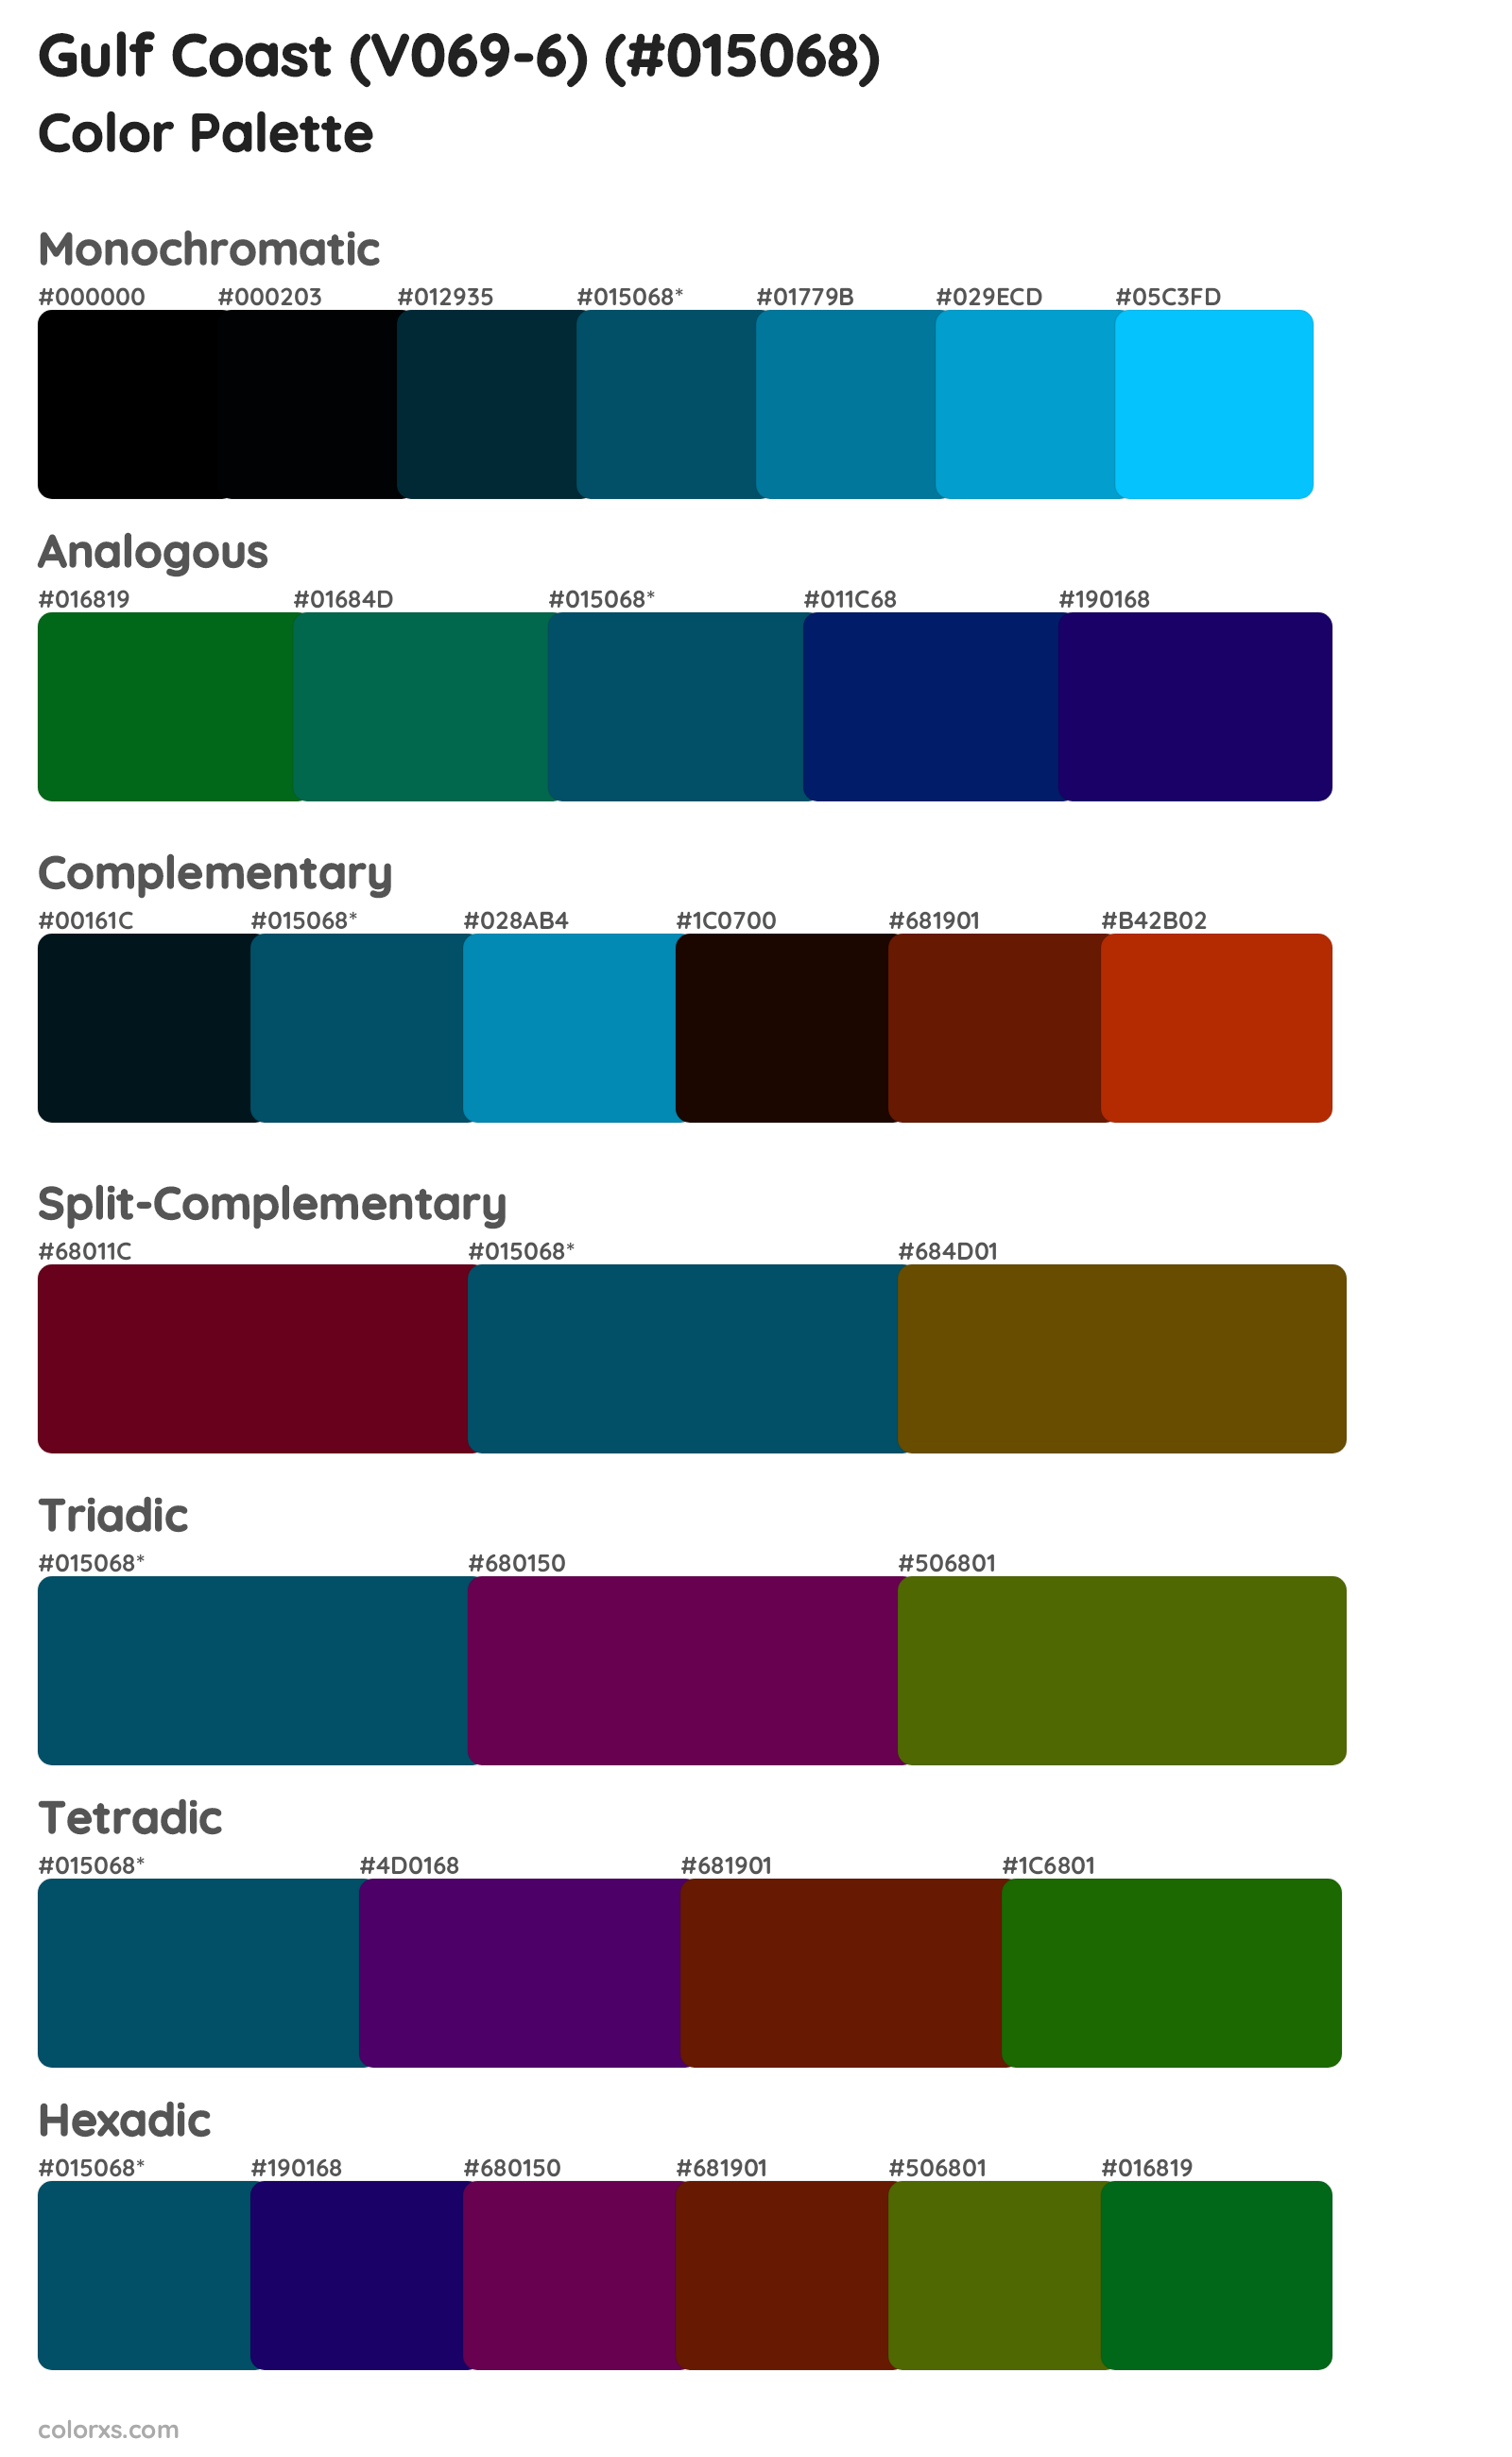 Gulf Coast (V069-6) Color Scheme Palettes